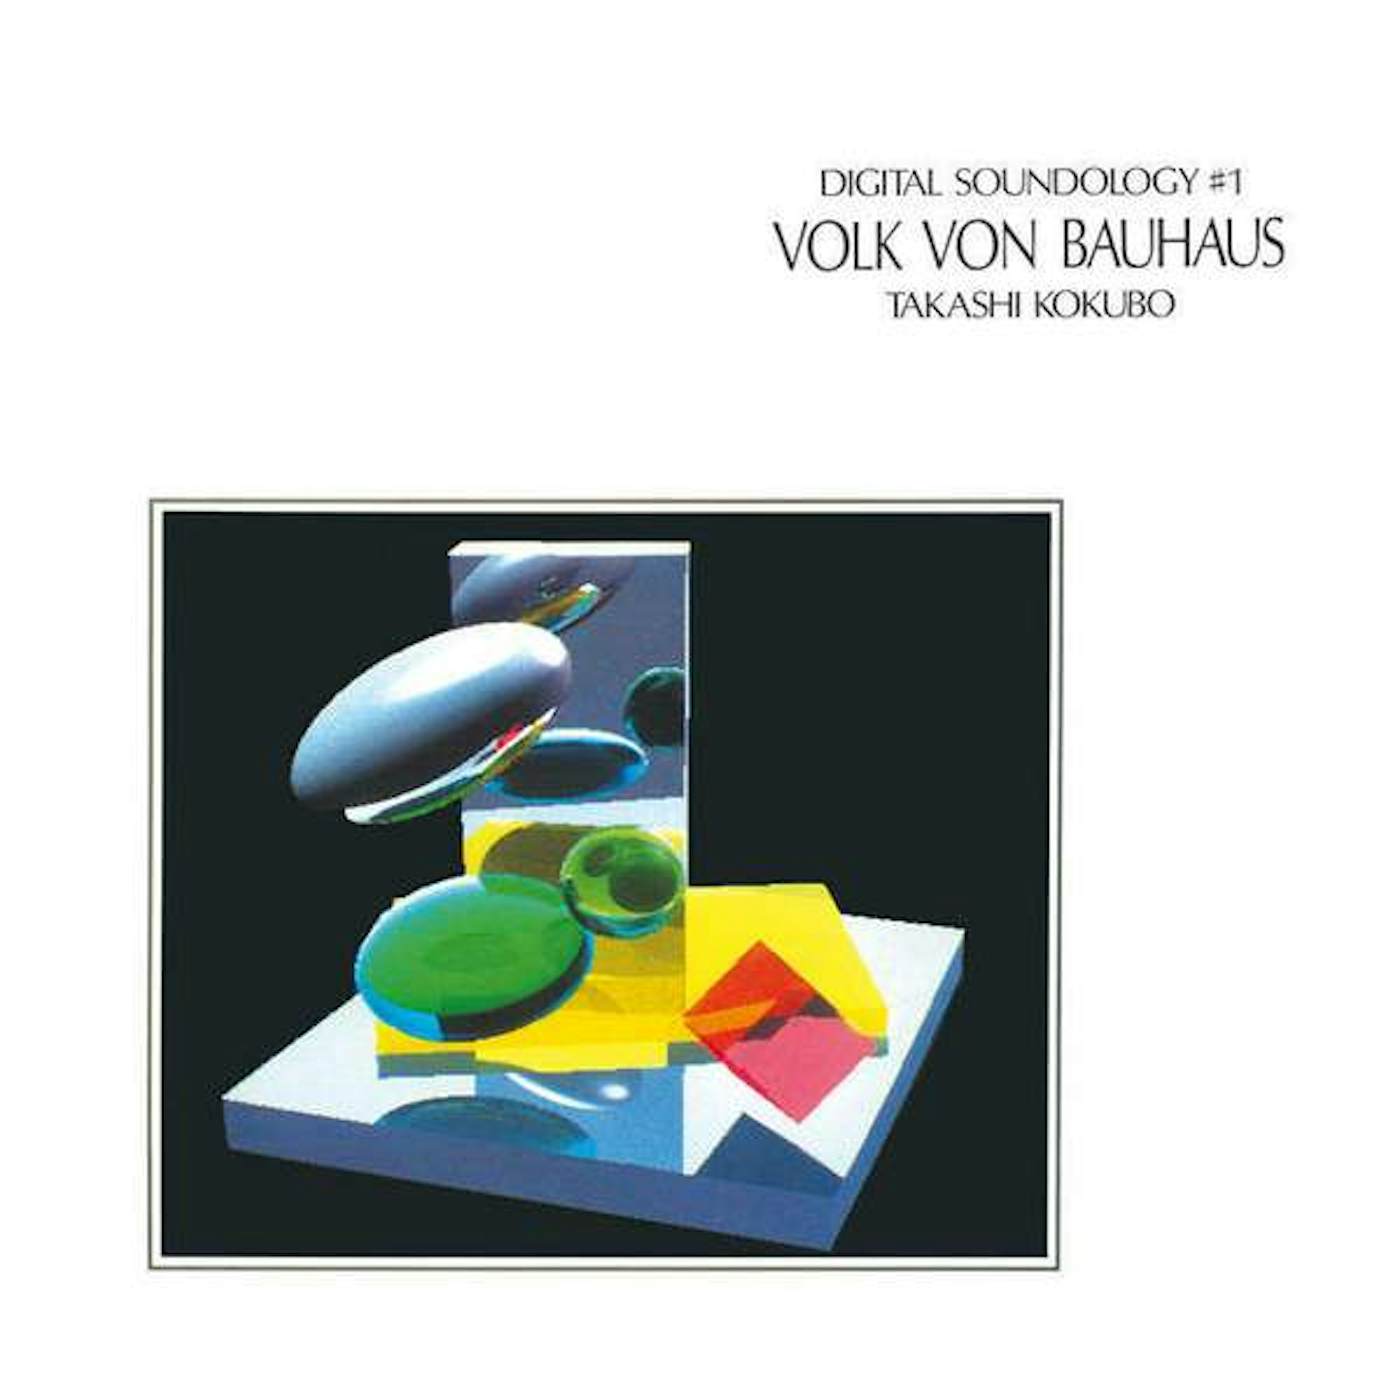 Takashi Kokubo DIGITAL SOUNDOLOGY #1 VOLK VON BAUHAUS Vinyl Record